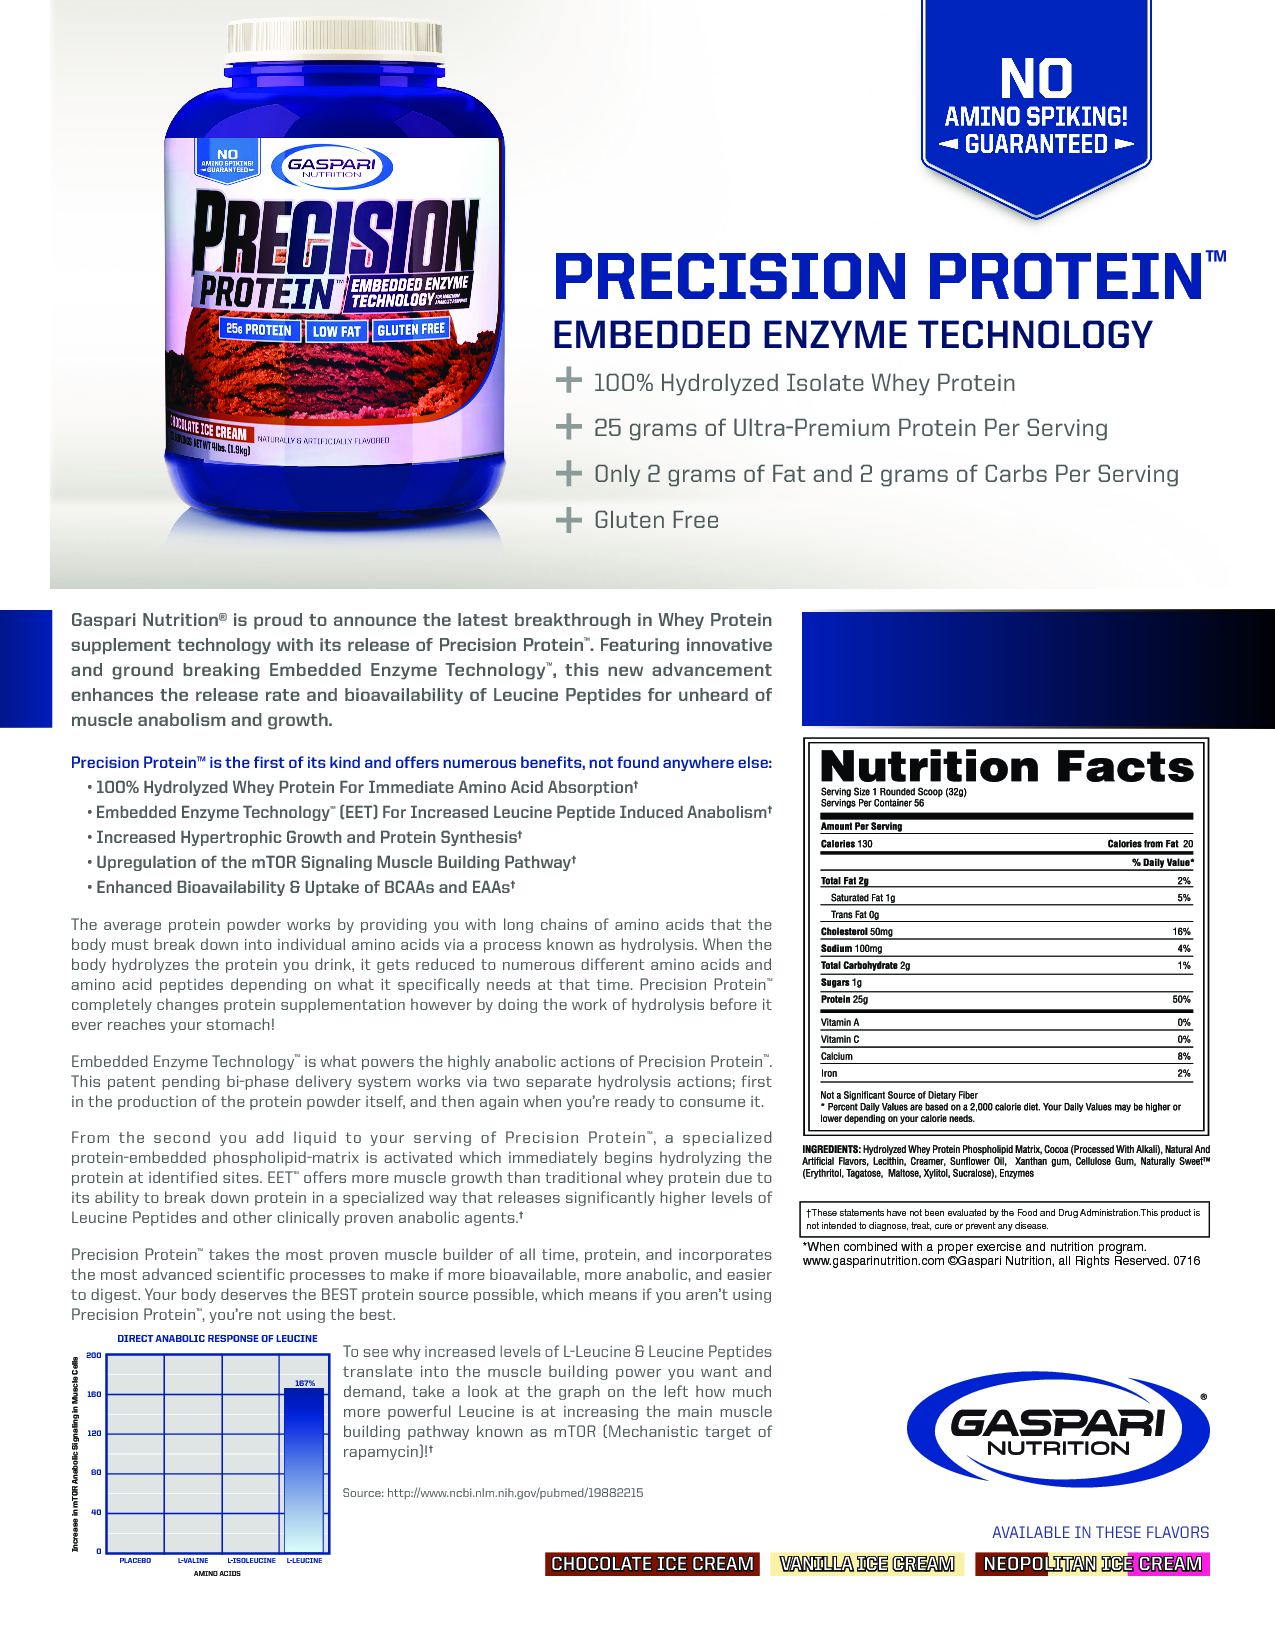 Gaspari Precision Protein